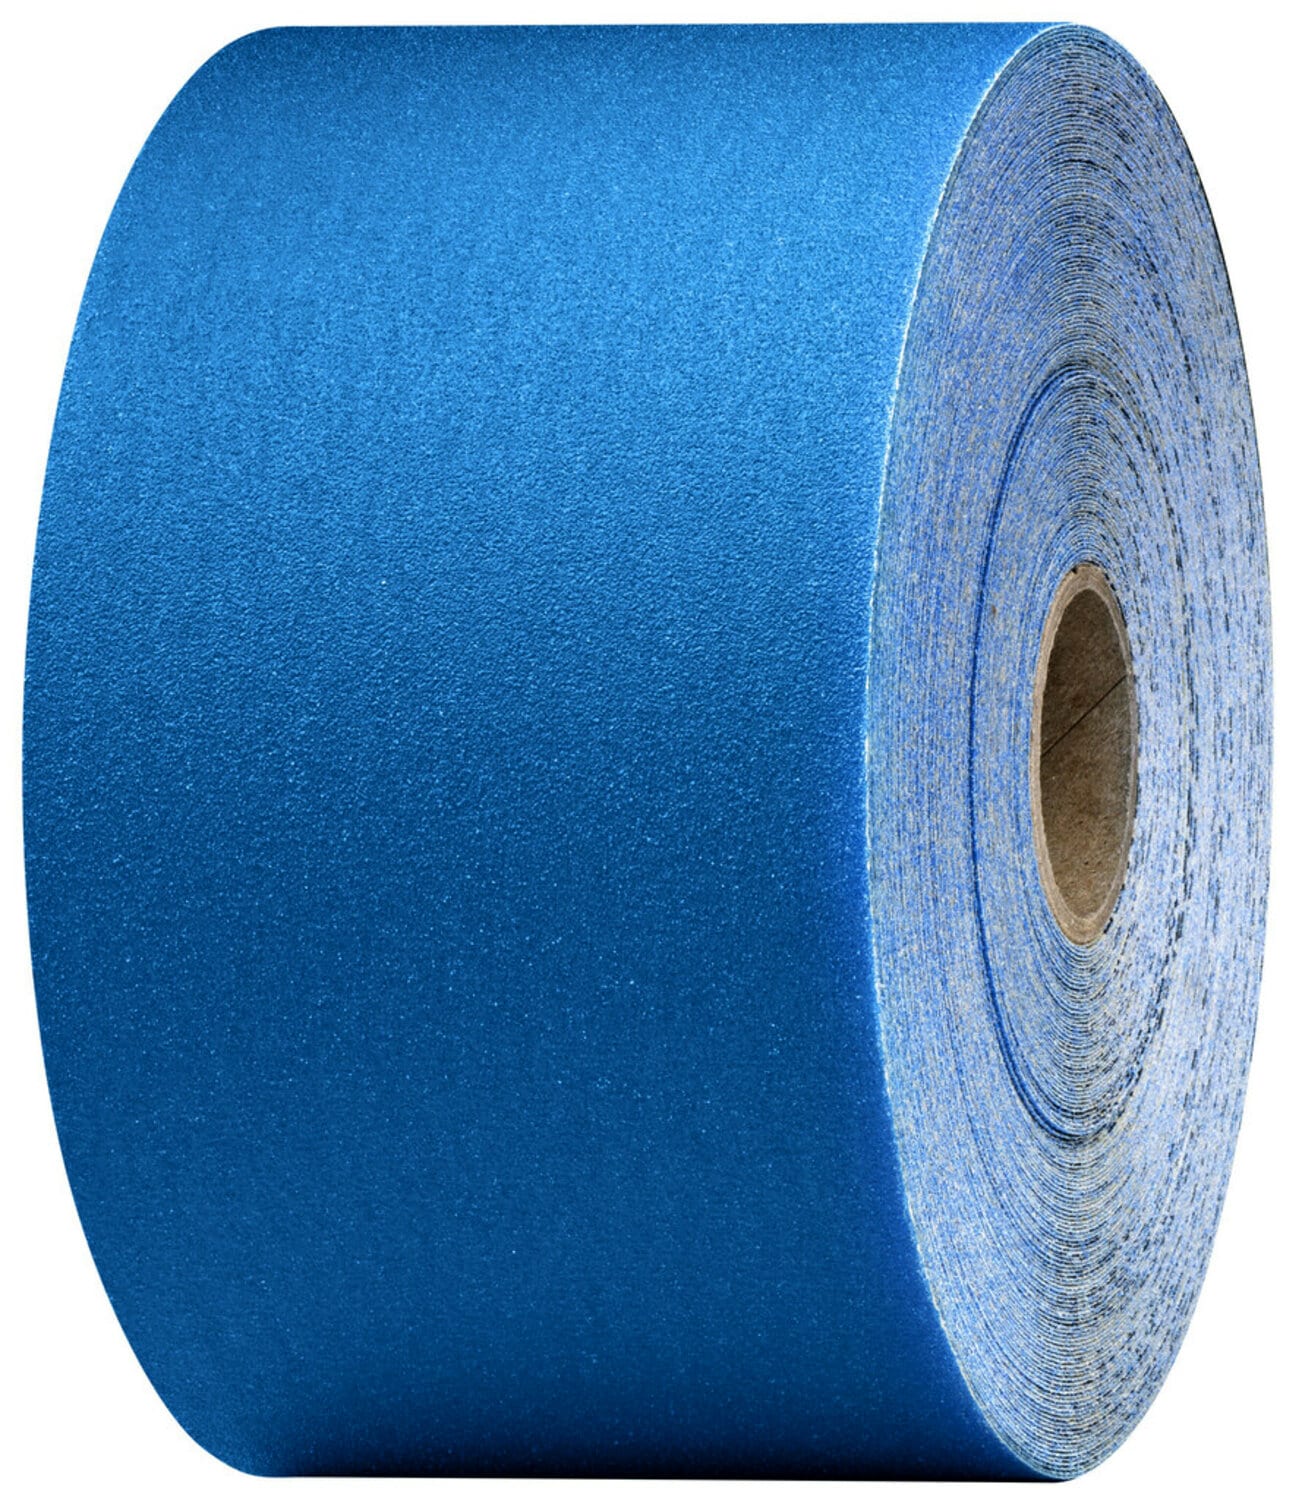 7100098267 - 3M Stikit Blue Abrasive Sheet Roll, 36226, 400, 2-3/4 in x 45 yd, 5
rolls per case